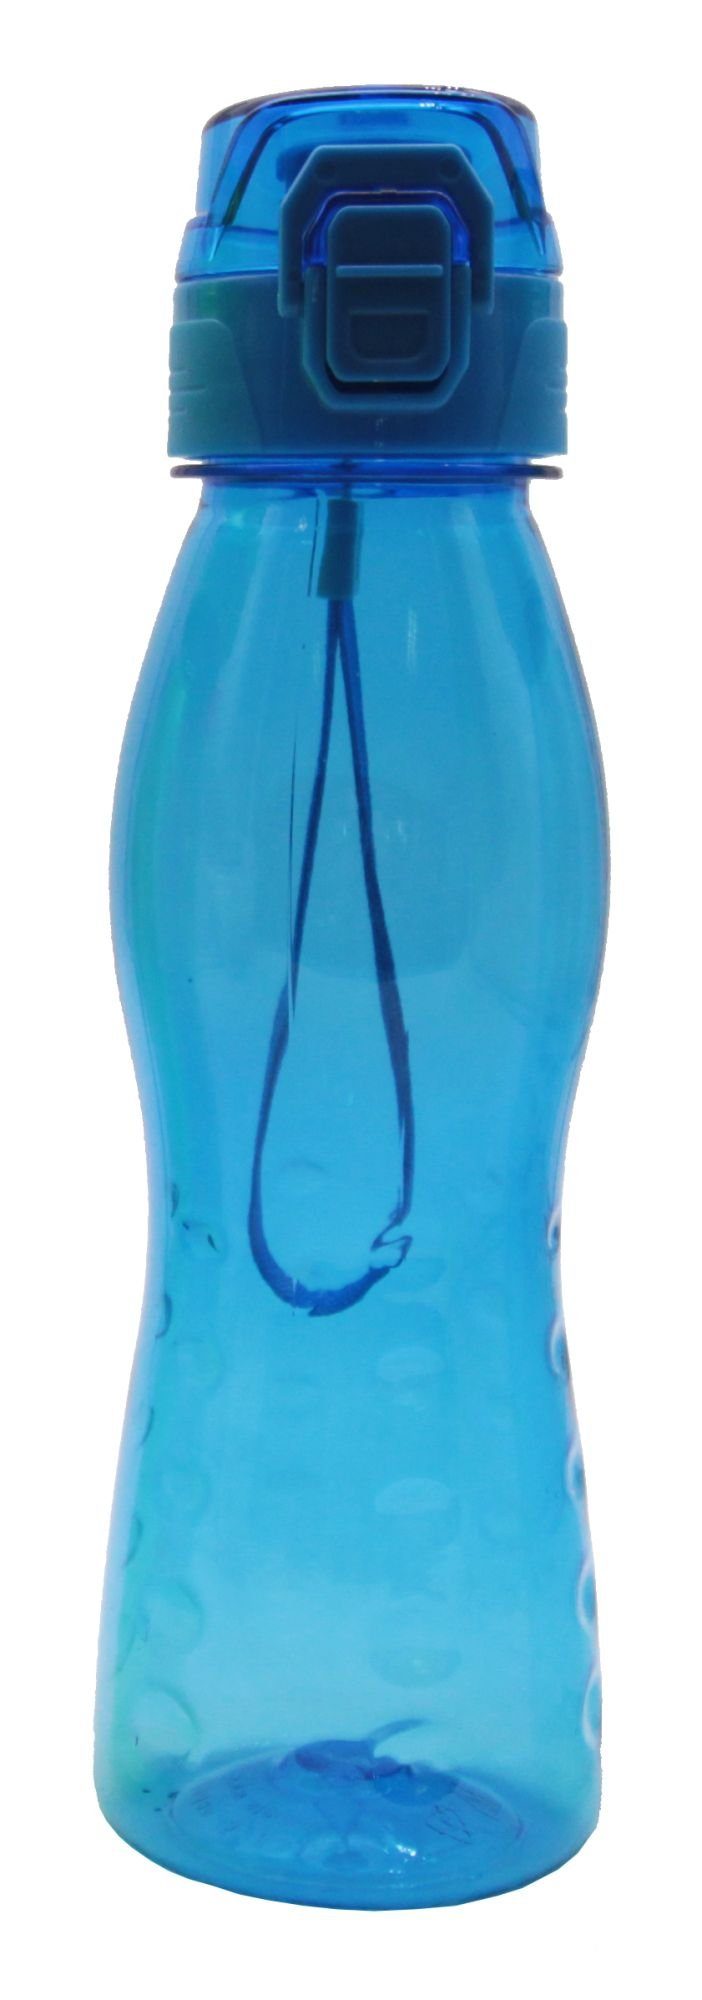 Steuber Trinkflasche, Klick Top Premium Freizeit Trinkflasche, 700 ml PREMIUM-Blau